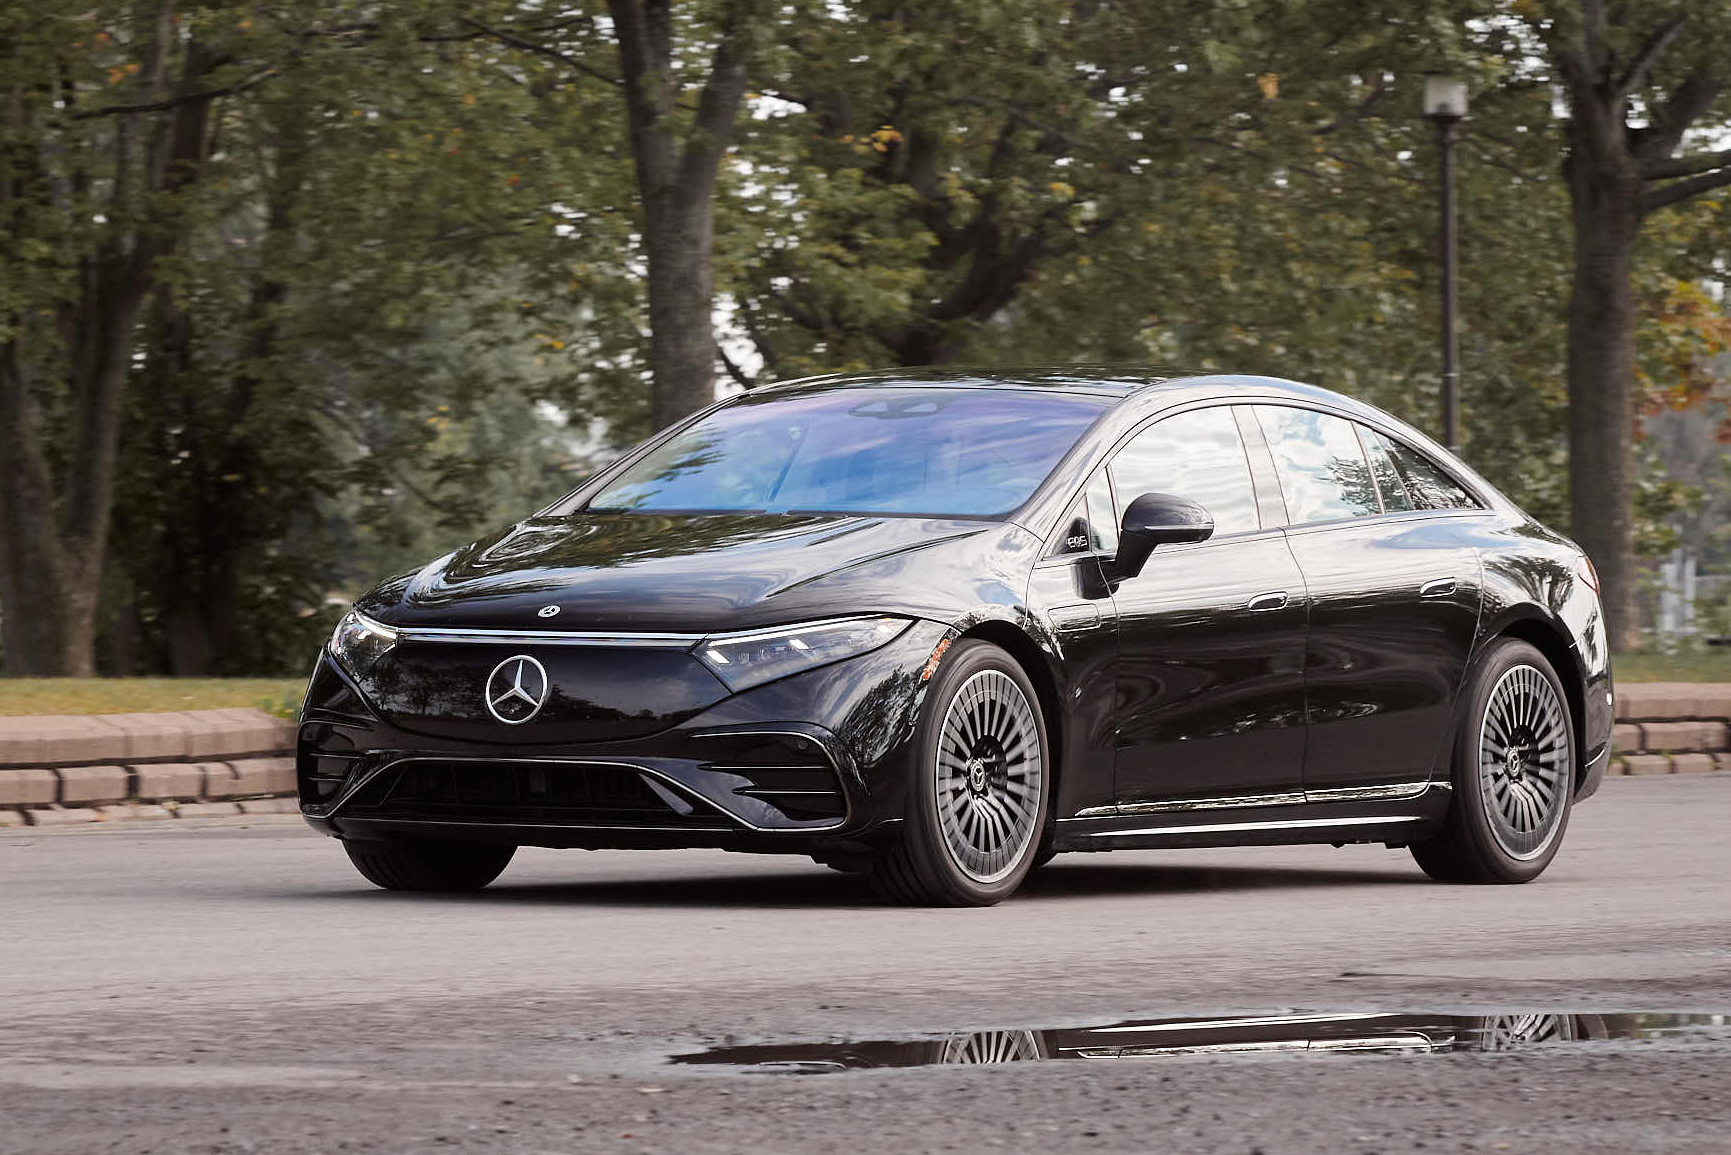 2022 Mercedes-Benz EQS